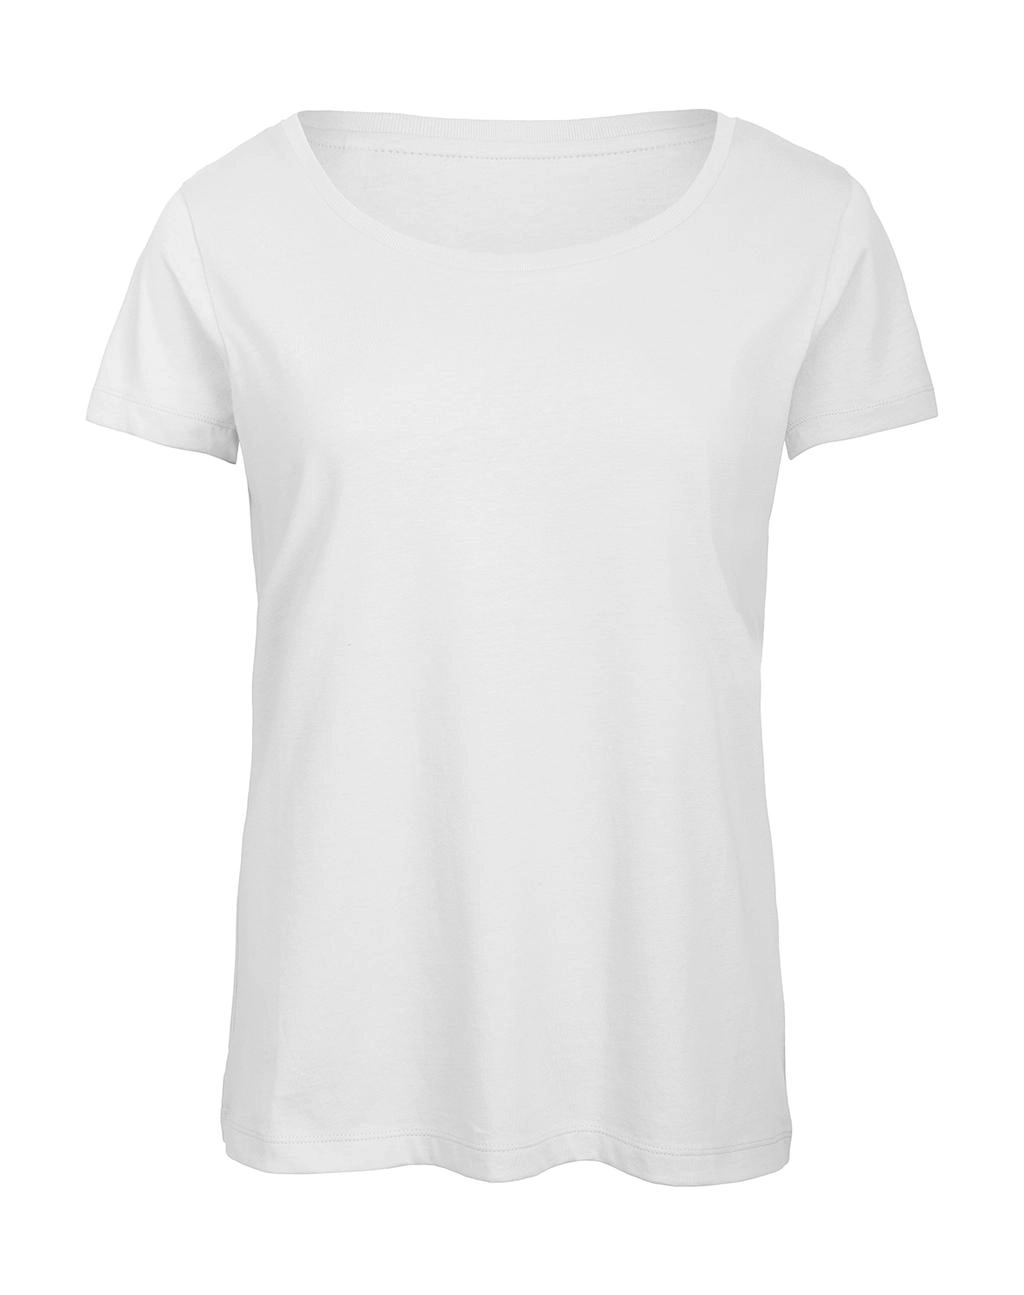 Triblend/women T-Shirt zum Besticken und Bedrucken in der Farbe White mit Ihren Logo, Schriftzug oder Motiv.